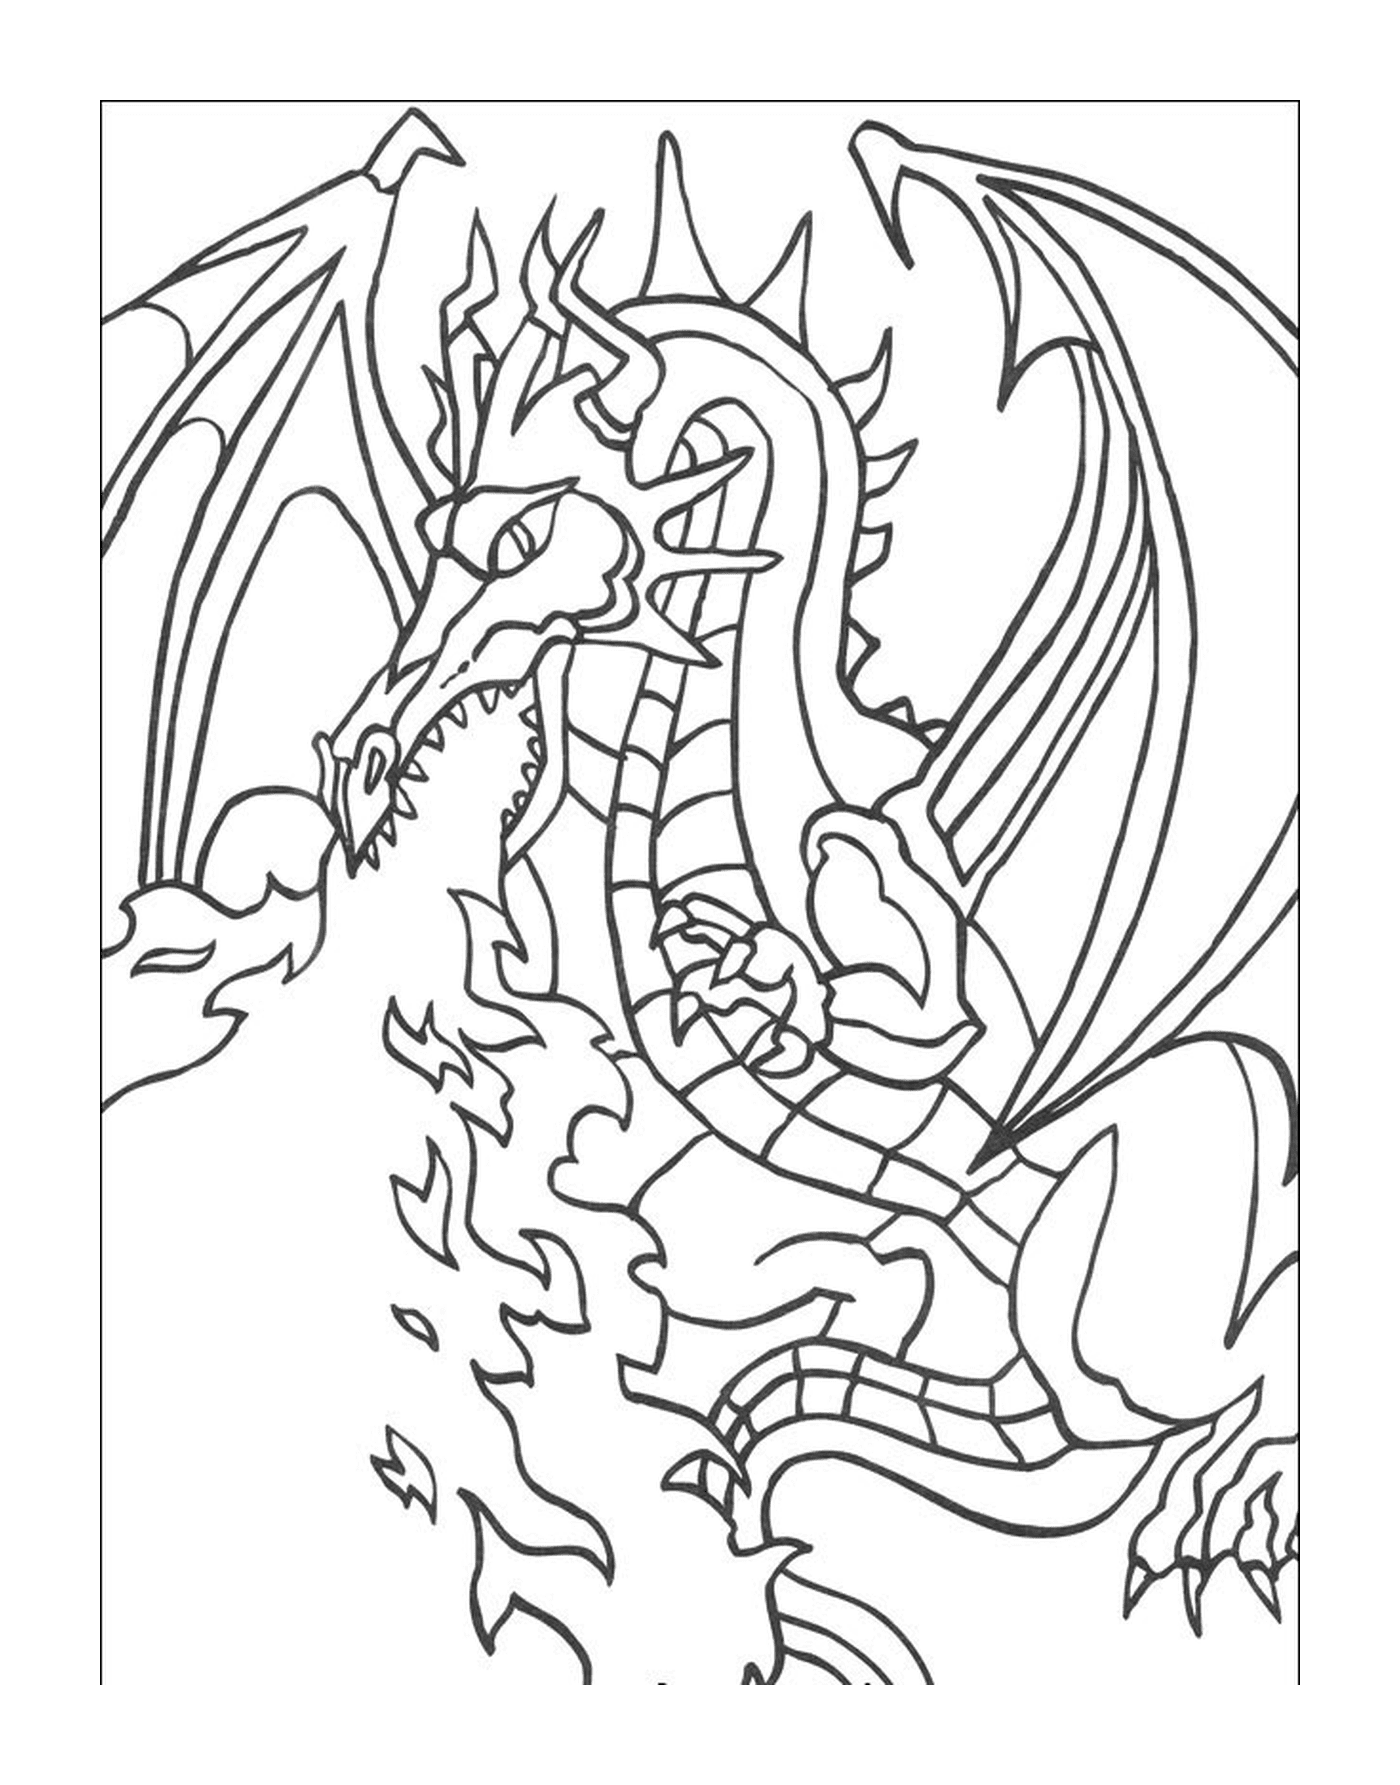  ड्रैगन एक सिगरेट पीते हैं 